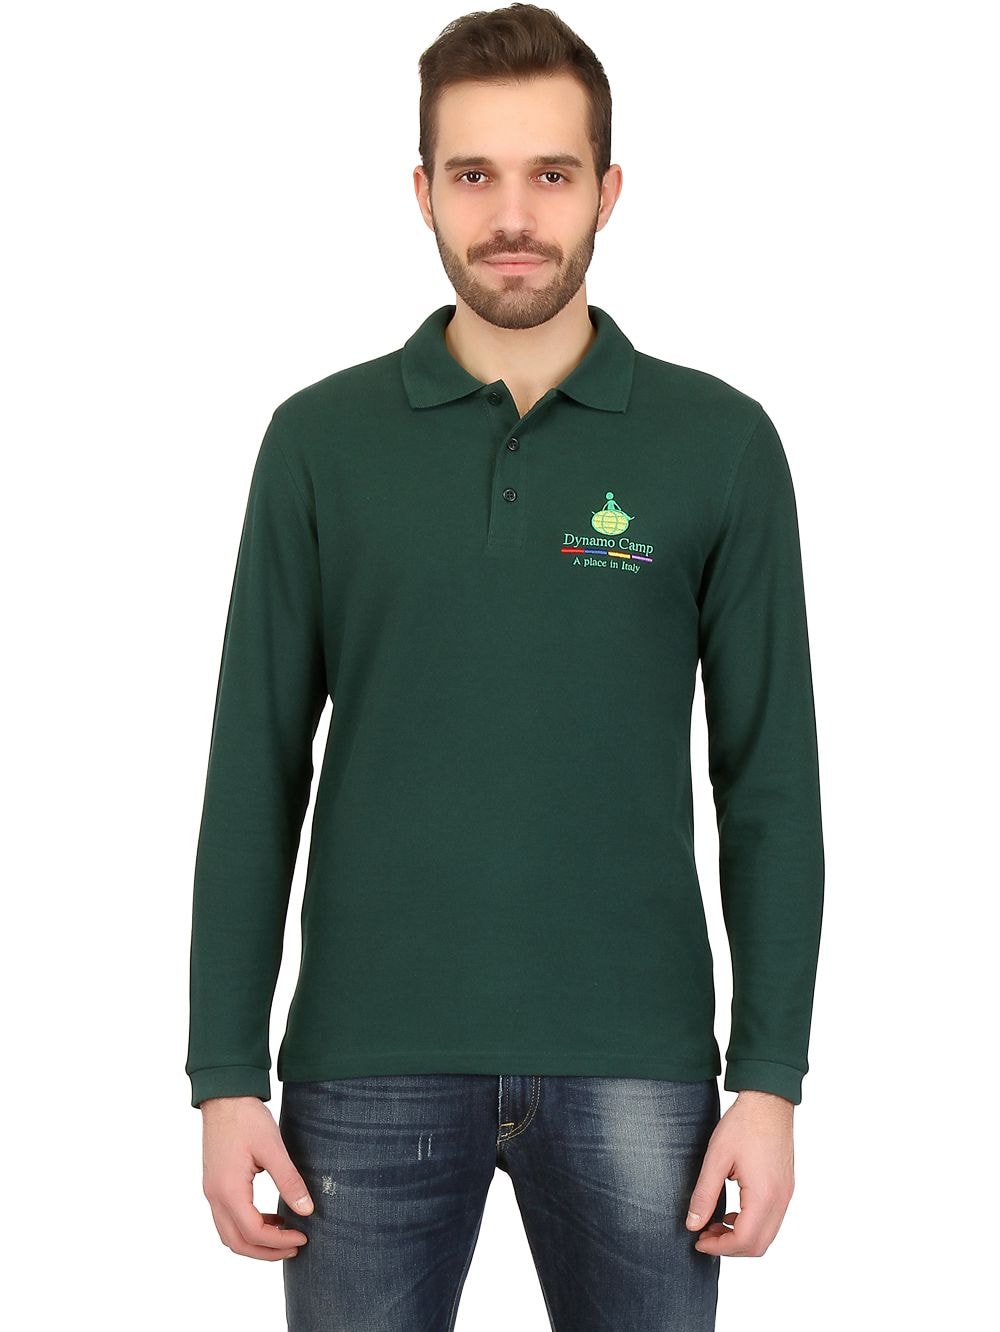 Dynamo Camp Long Sleeved Cotton Pique Polo Shirt In Green